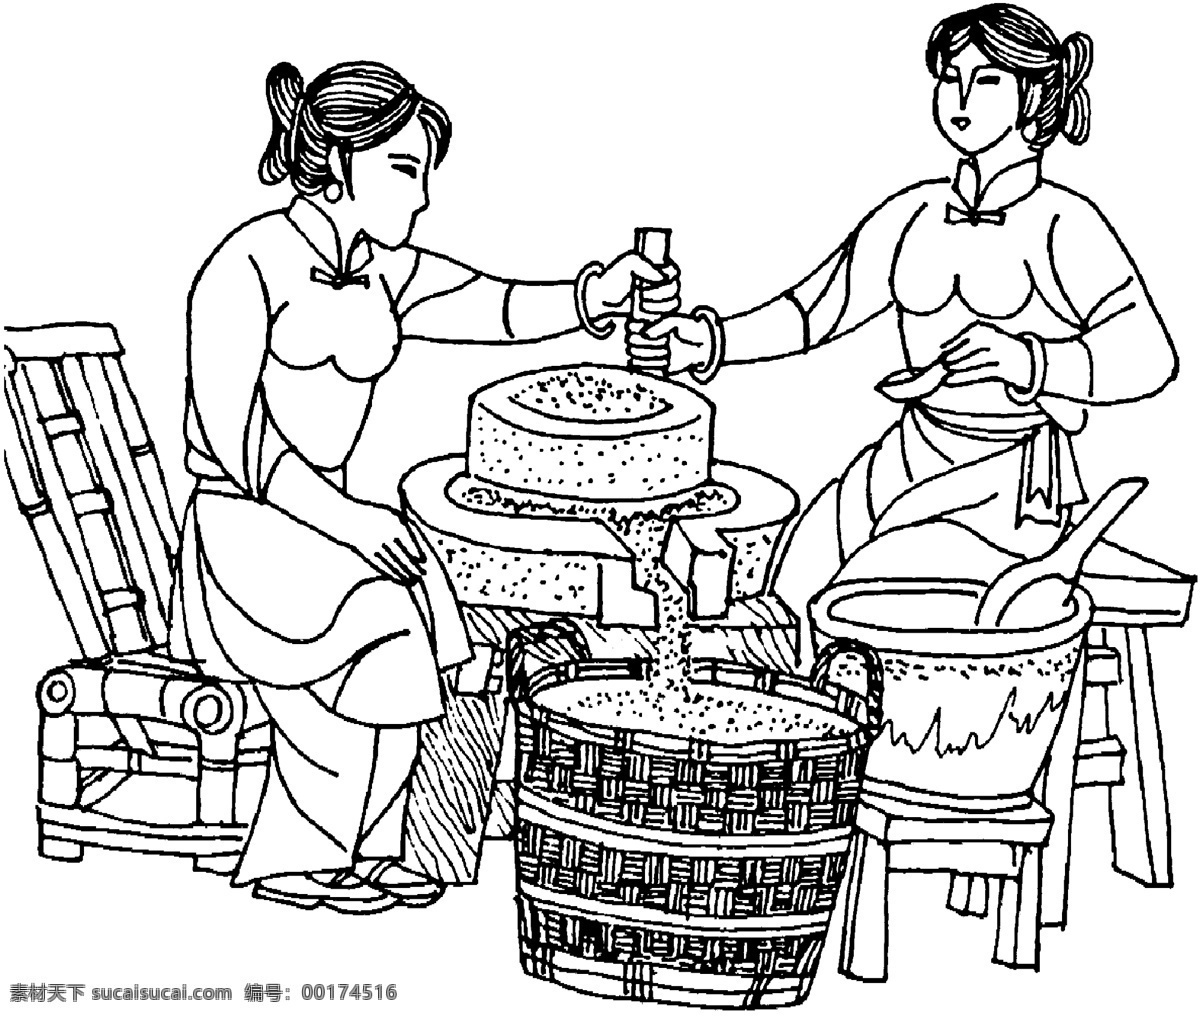 磨豆子 古代 磨 豆 工具 制作 豆腐 过程 图 传统文化 文化艺术